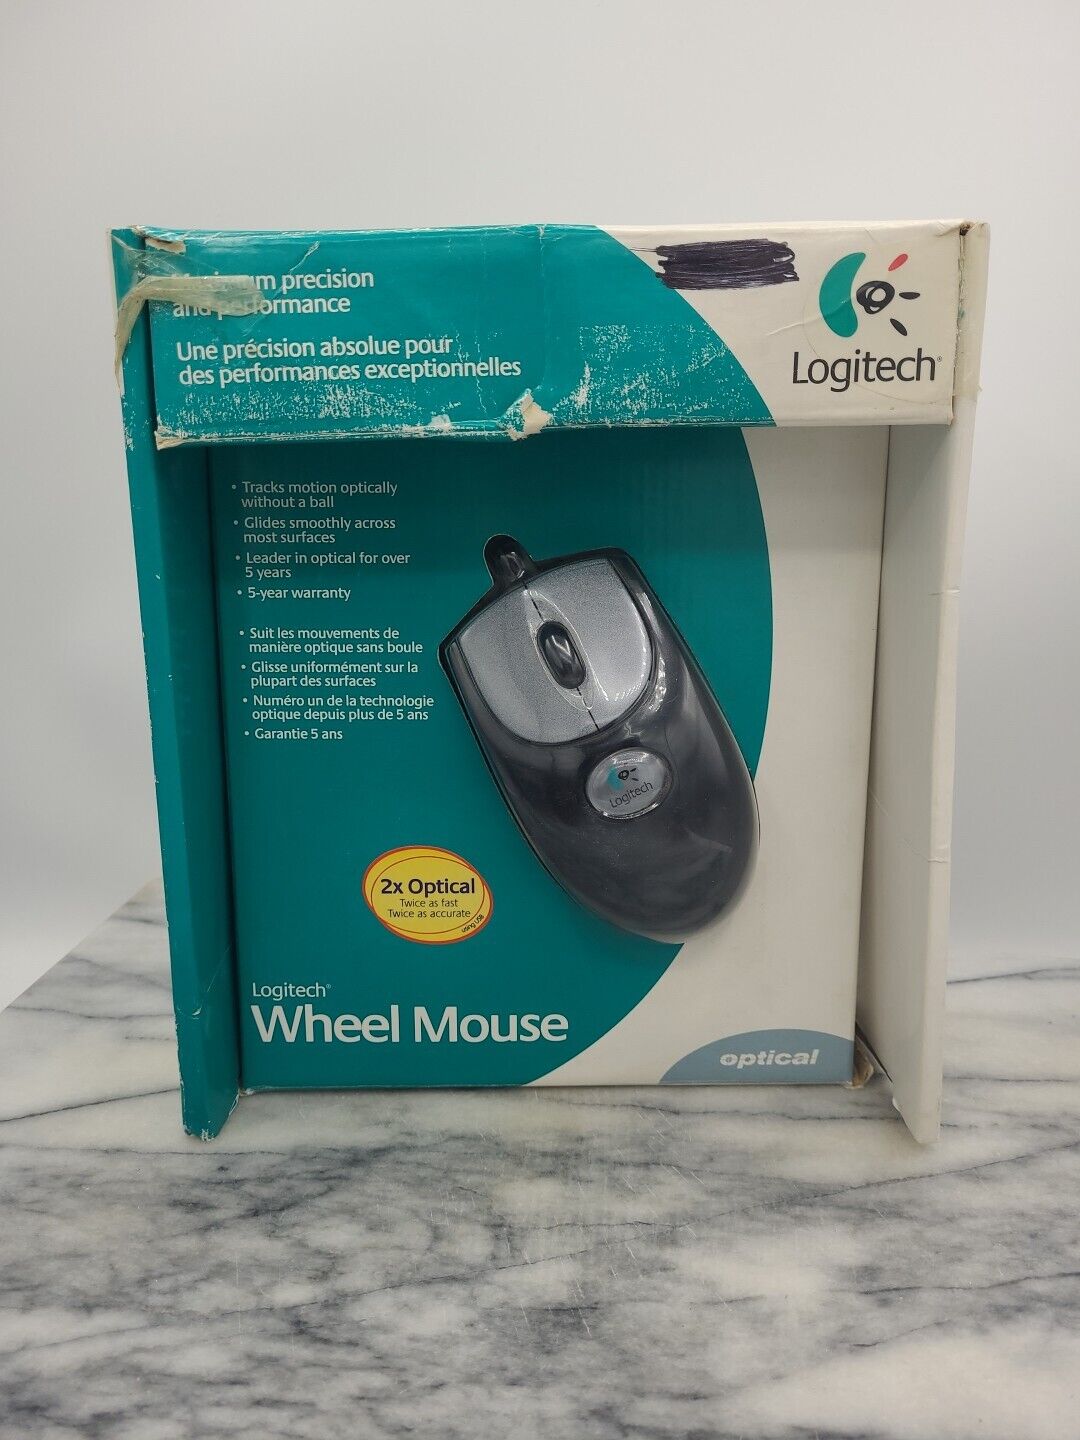 Black Logitech USB Wired 2x Optical Wheel Mouse Model M-BJ58 Sealed Box 2002 Vtg